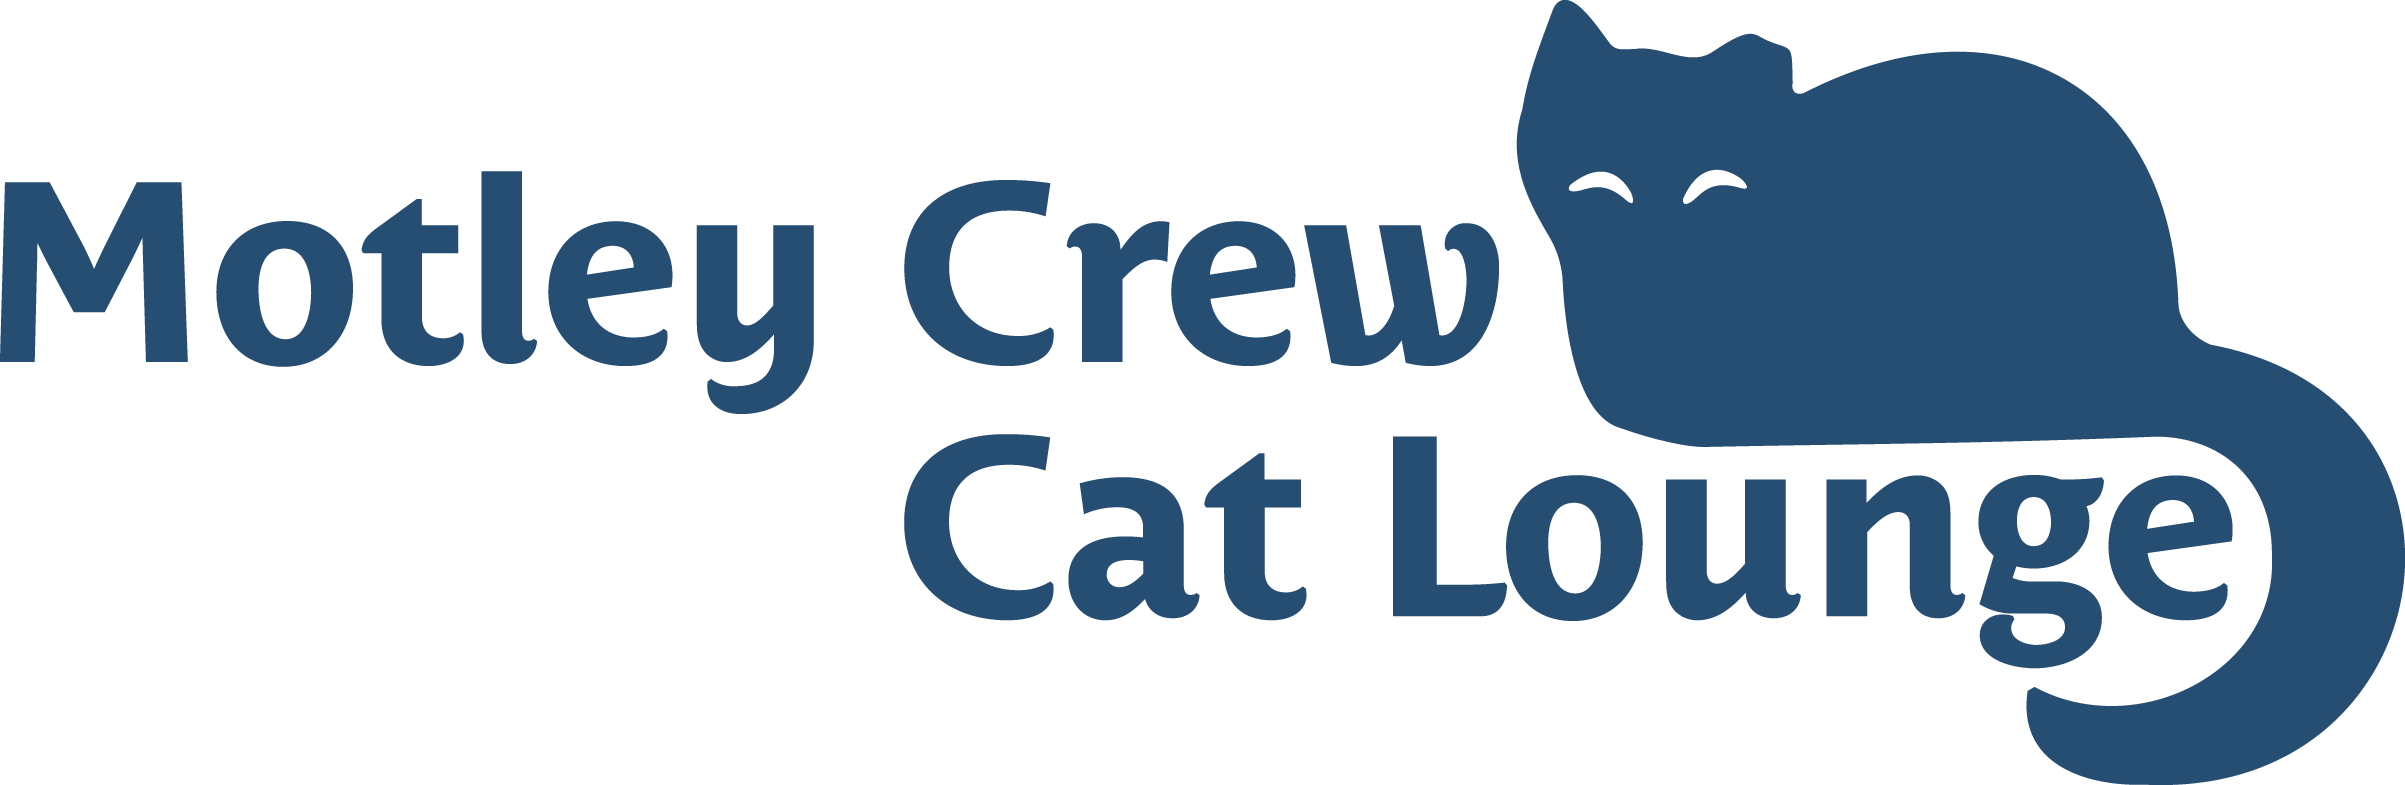 Motley Crew Cat Lounge